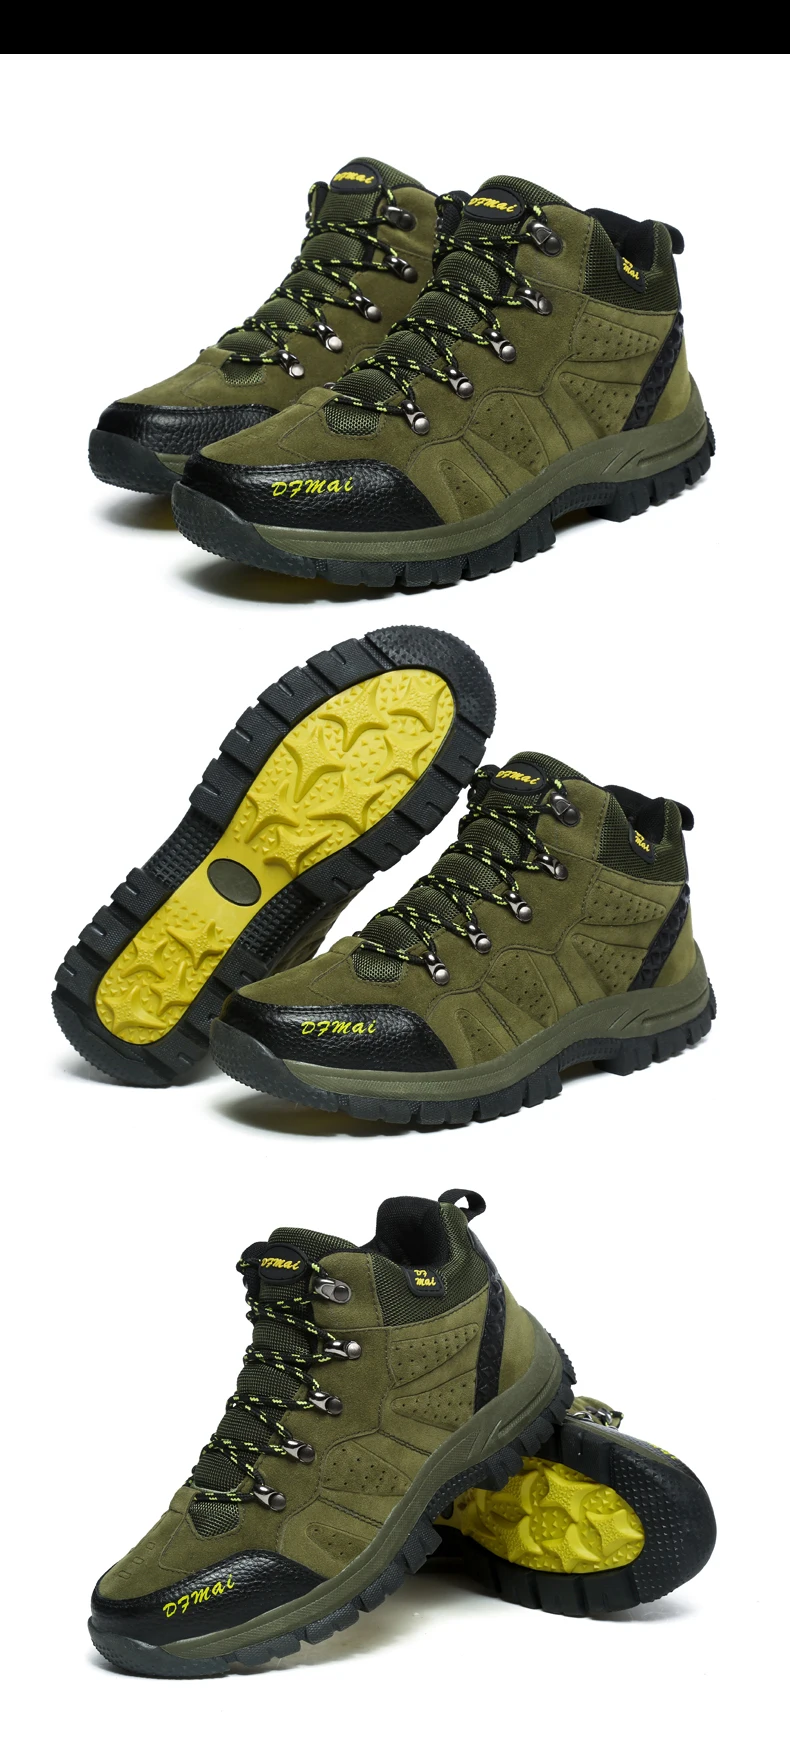 Открытый Пеший Туризм обувь Для мужчин большой Размеры с высоким берцем водонепроницаемая обувь Для мужчин зимняя мужская обувь для альпинизма женские нескользящие тапочки из натуральной кожи; зимние прогулочные ботинки